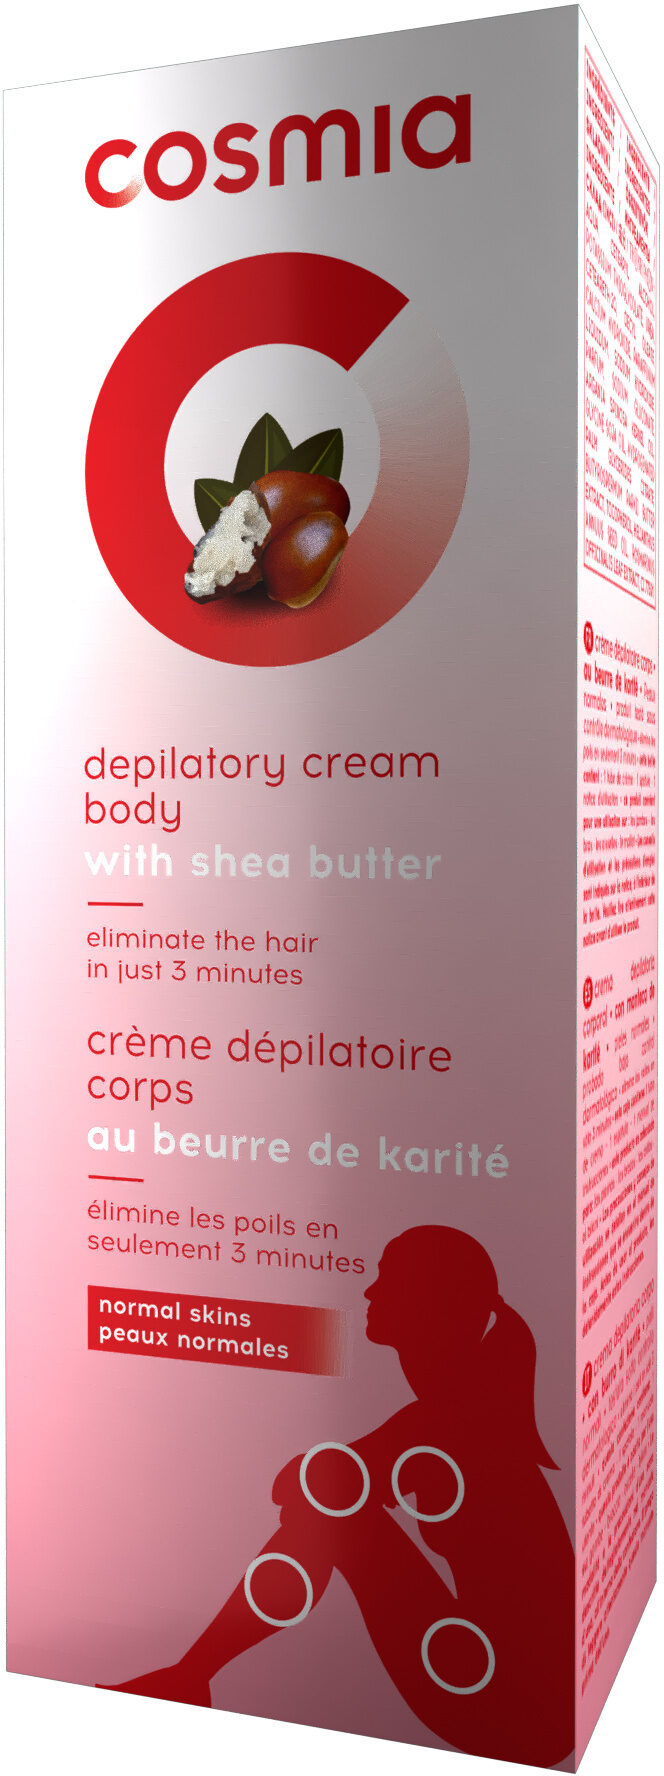 Crème dépilatoire corps au beurre de karité - 製品 - fr